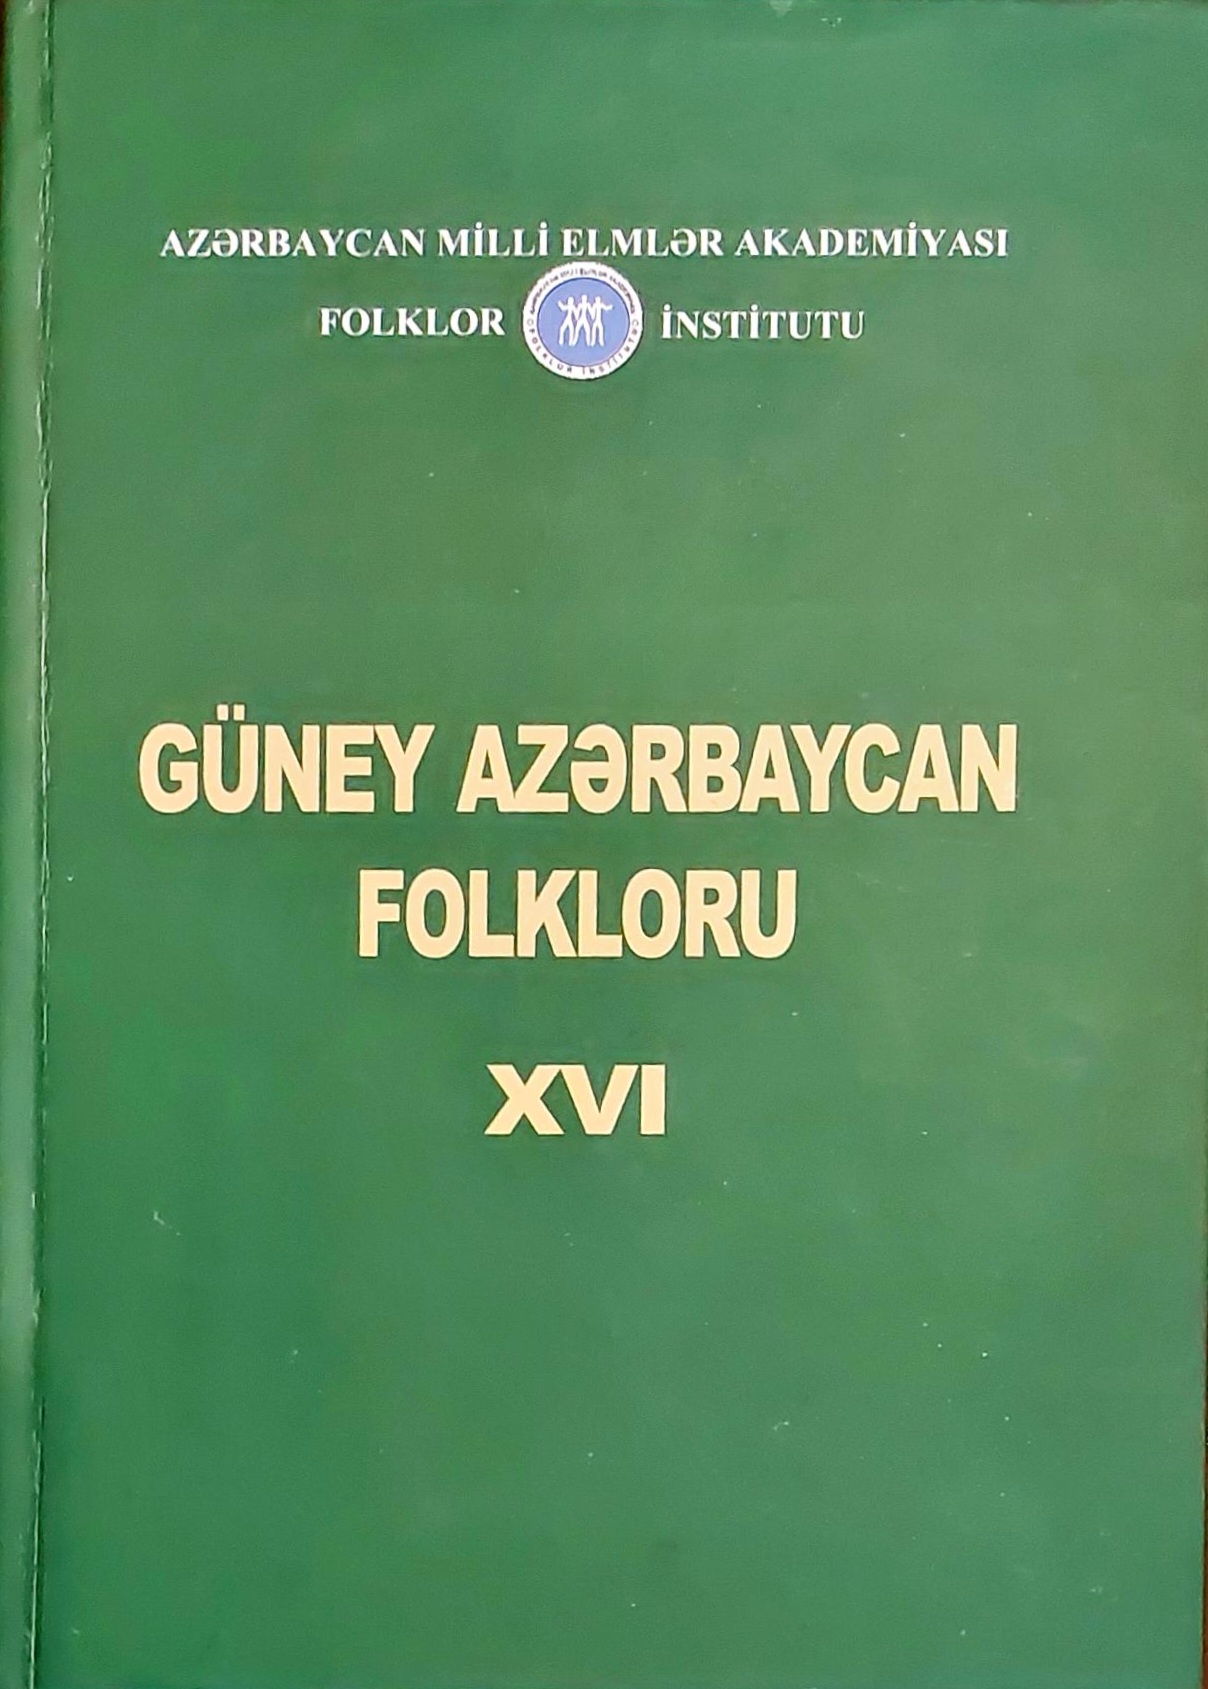 “Güney Azərbaycan folkloru” toplusunun XVI cildi işıq üzü gö...